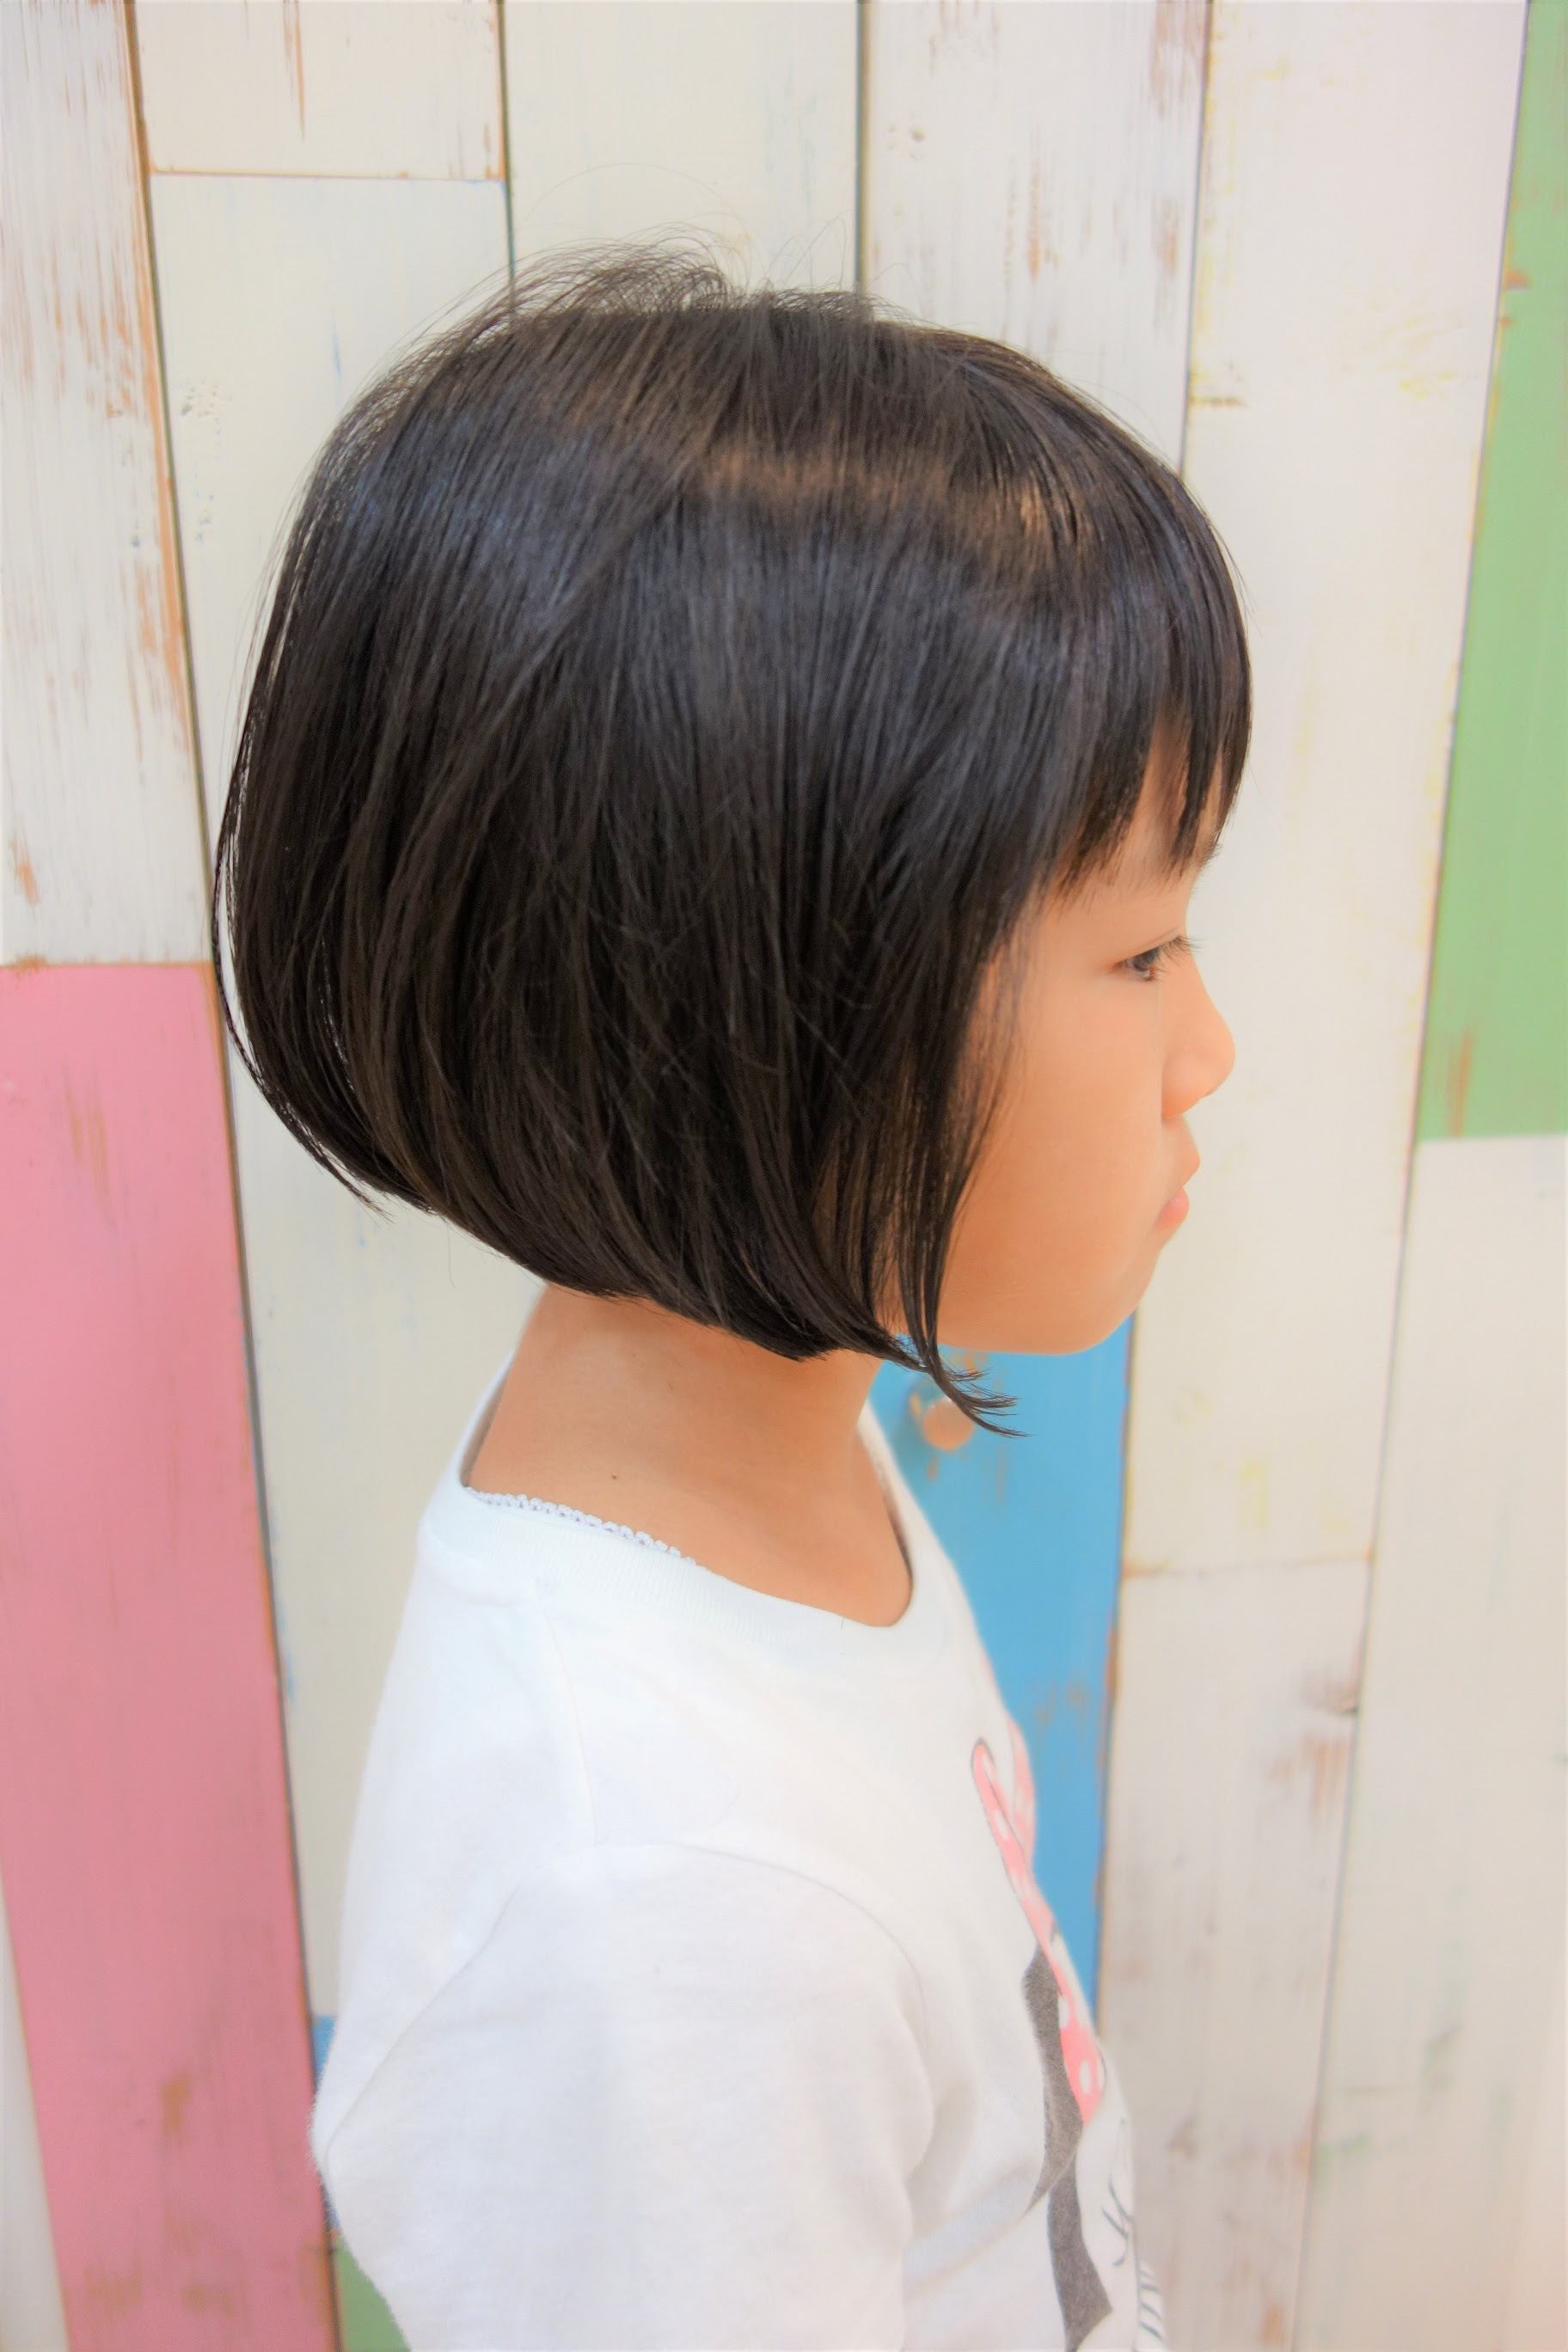 Udhyu 小学生 女の子 髪型 ボブ 画像